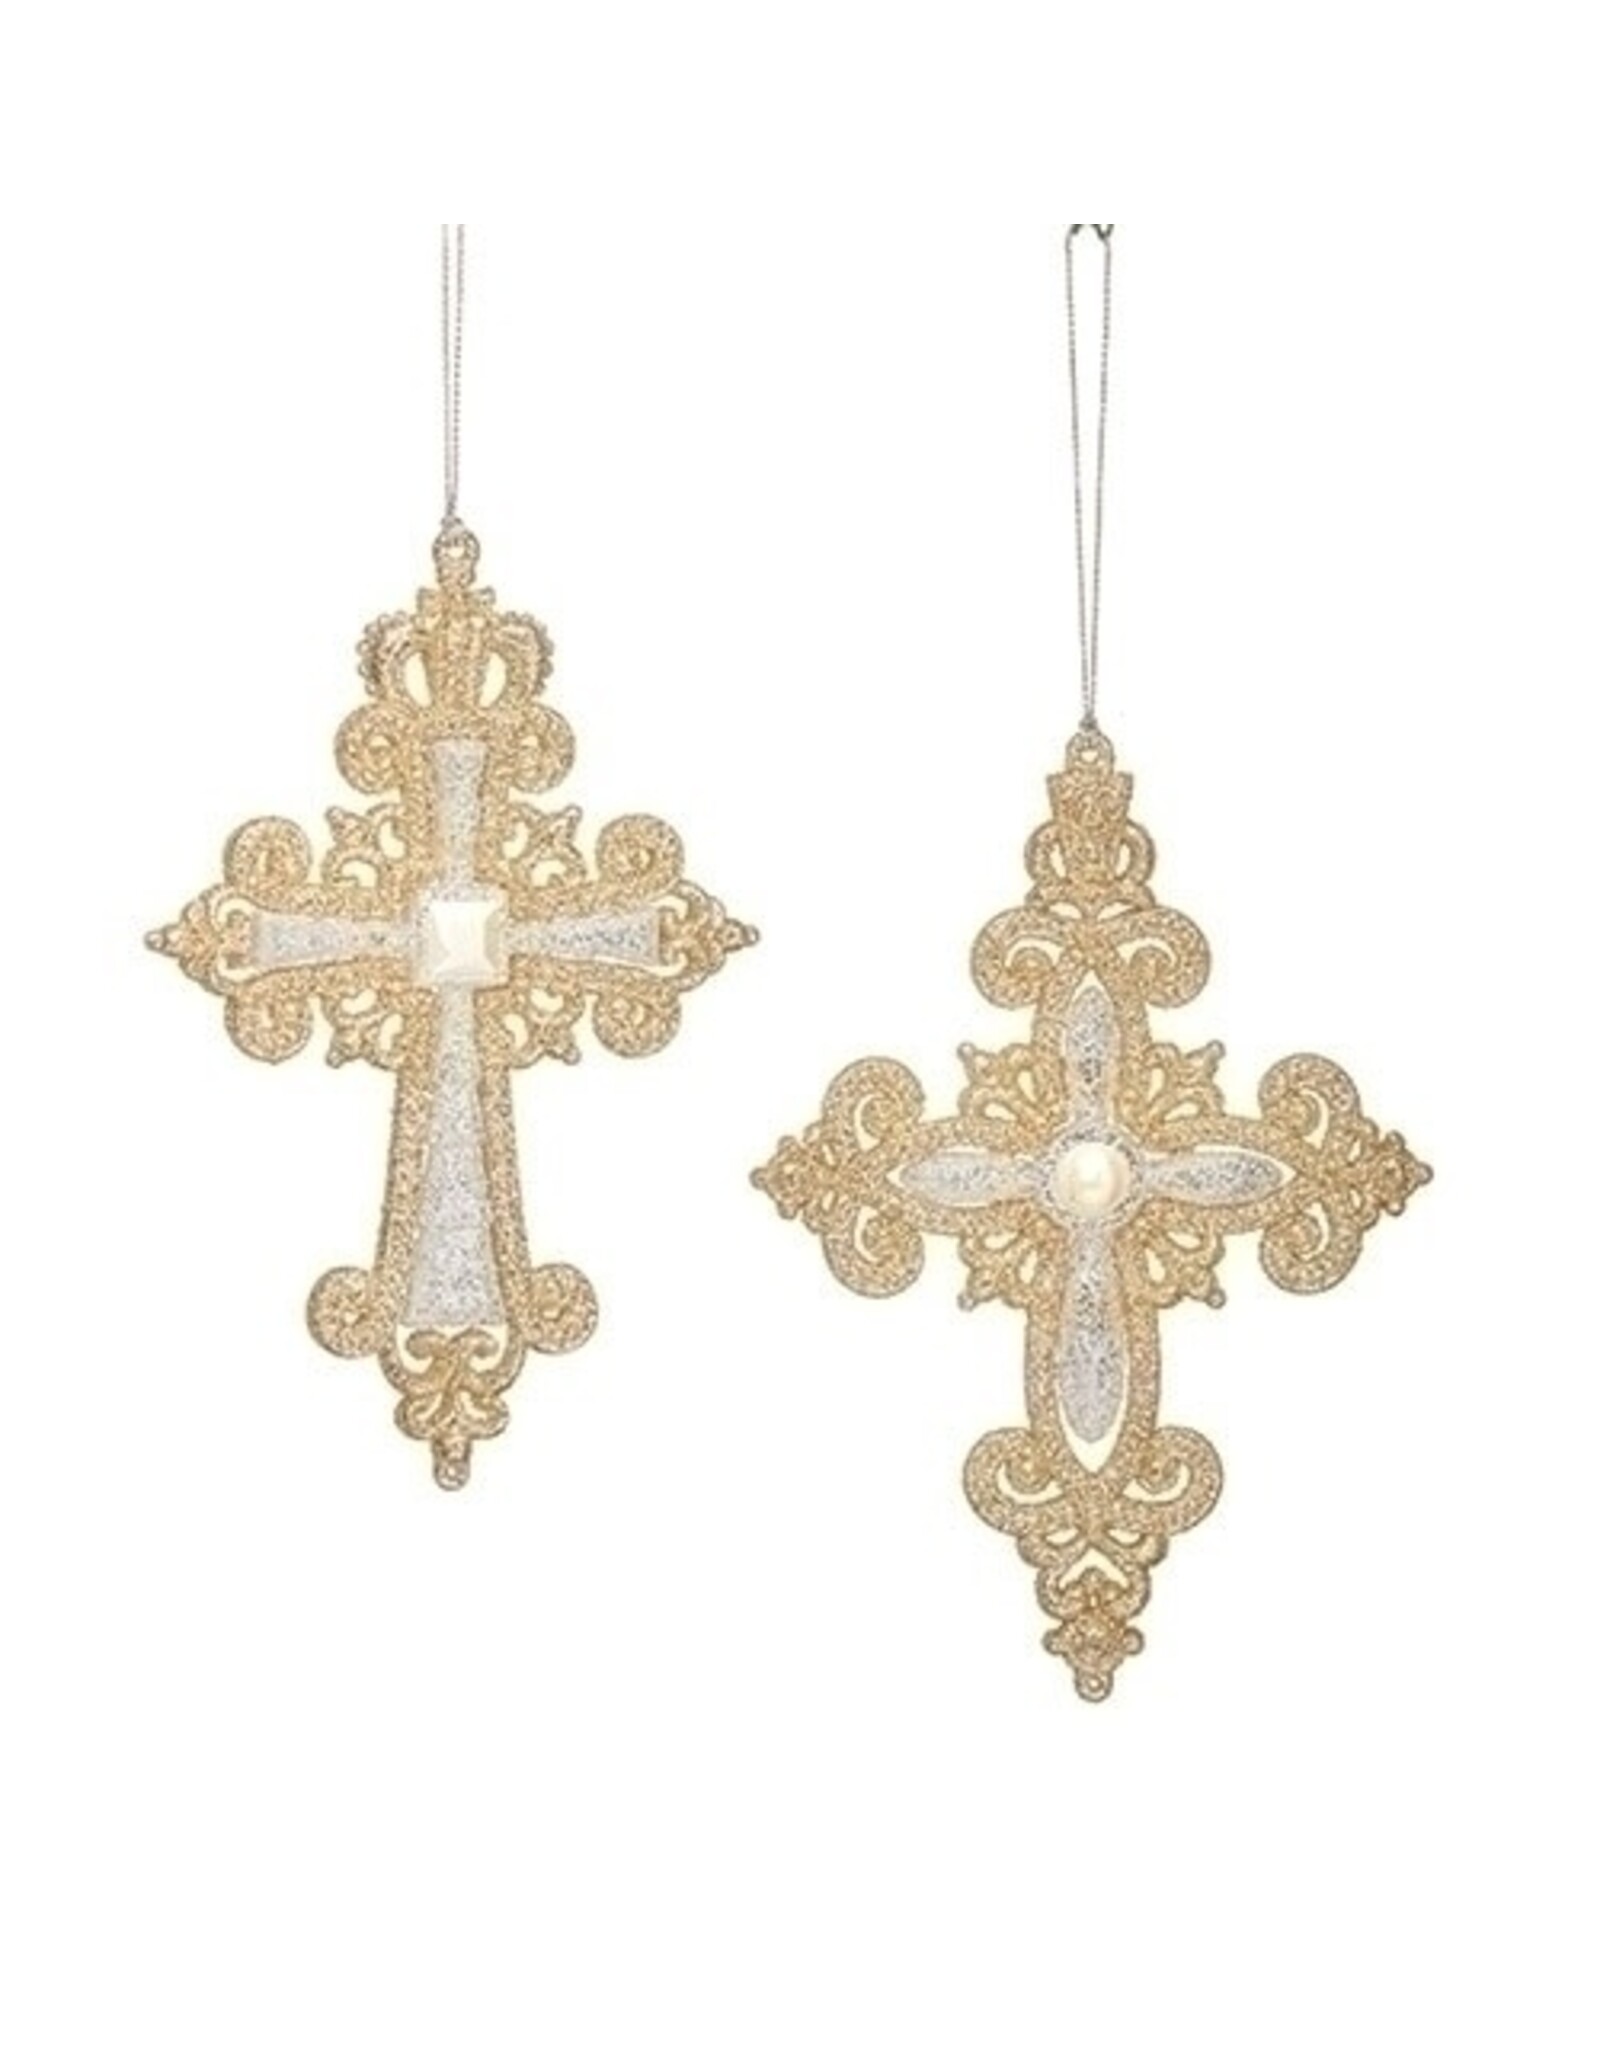 Roman Ornament - Glitter Cross